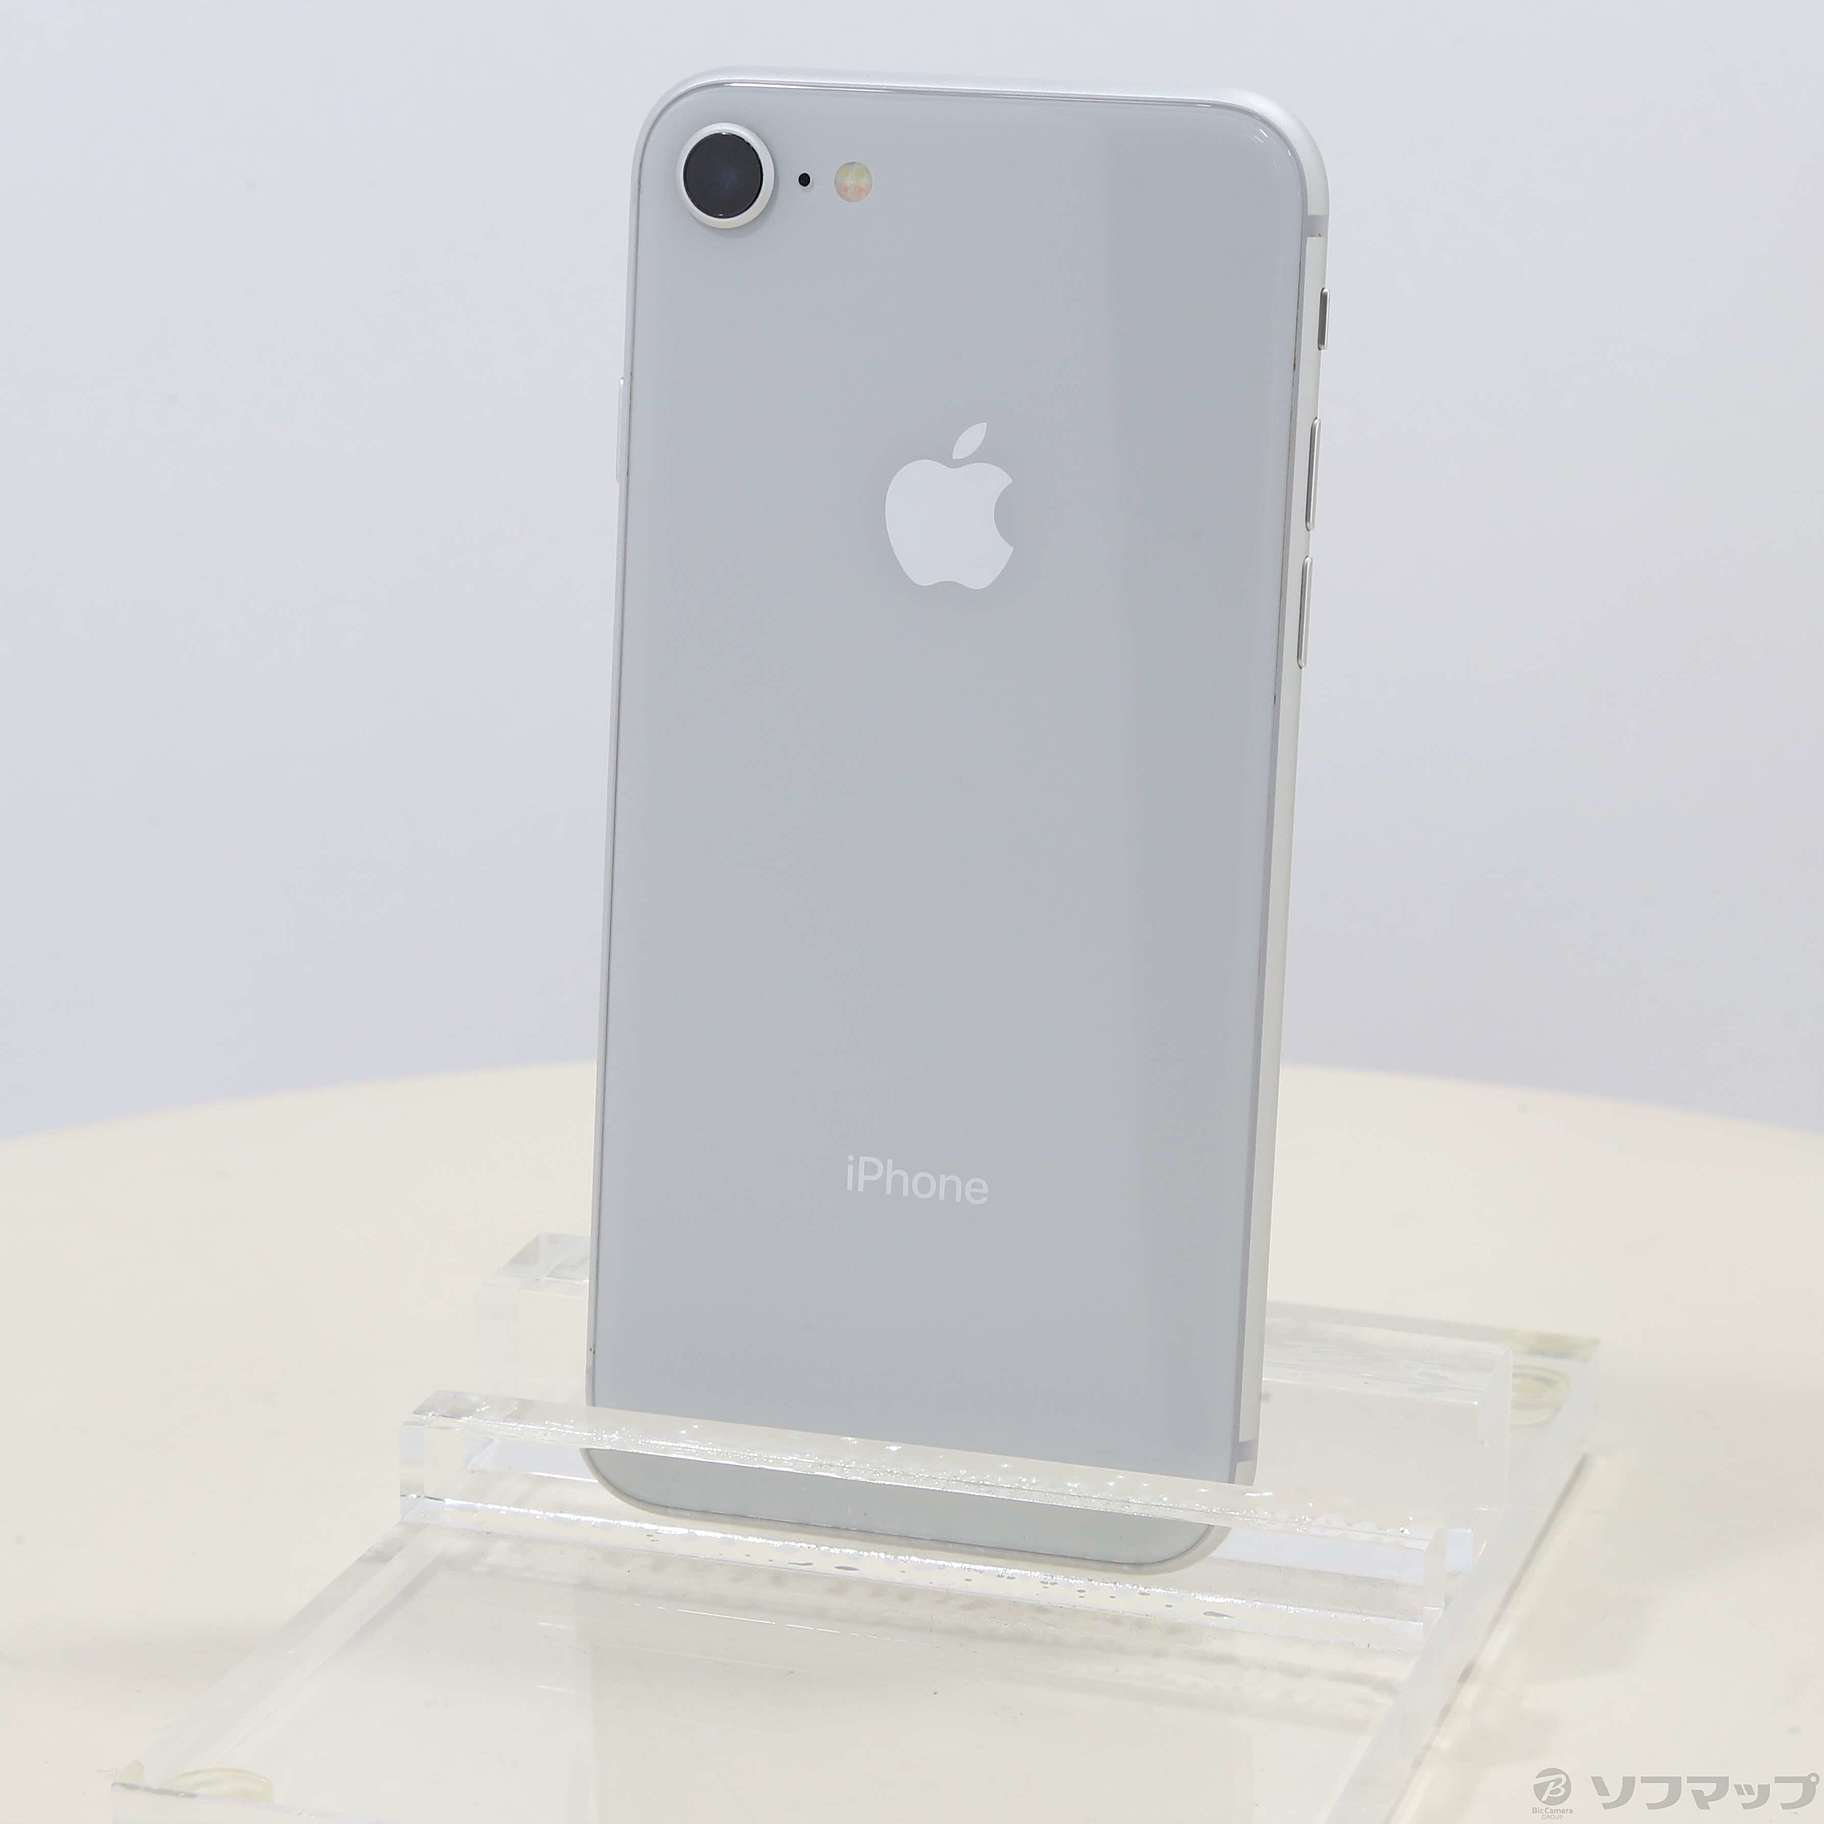 iPhone8 64GB シルバー MQ792J A SoftBank - スマートフォン本体